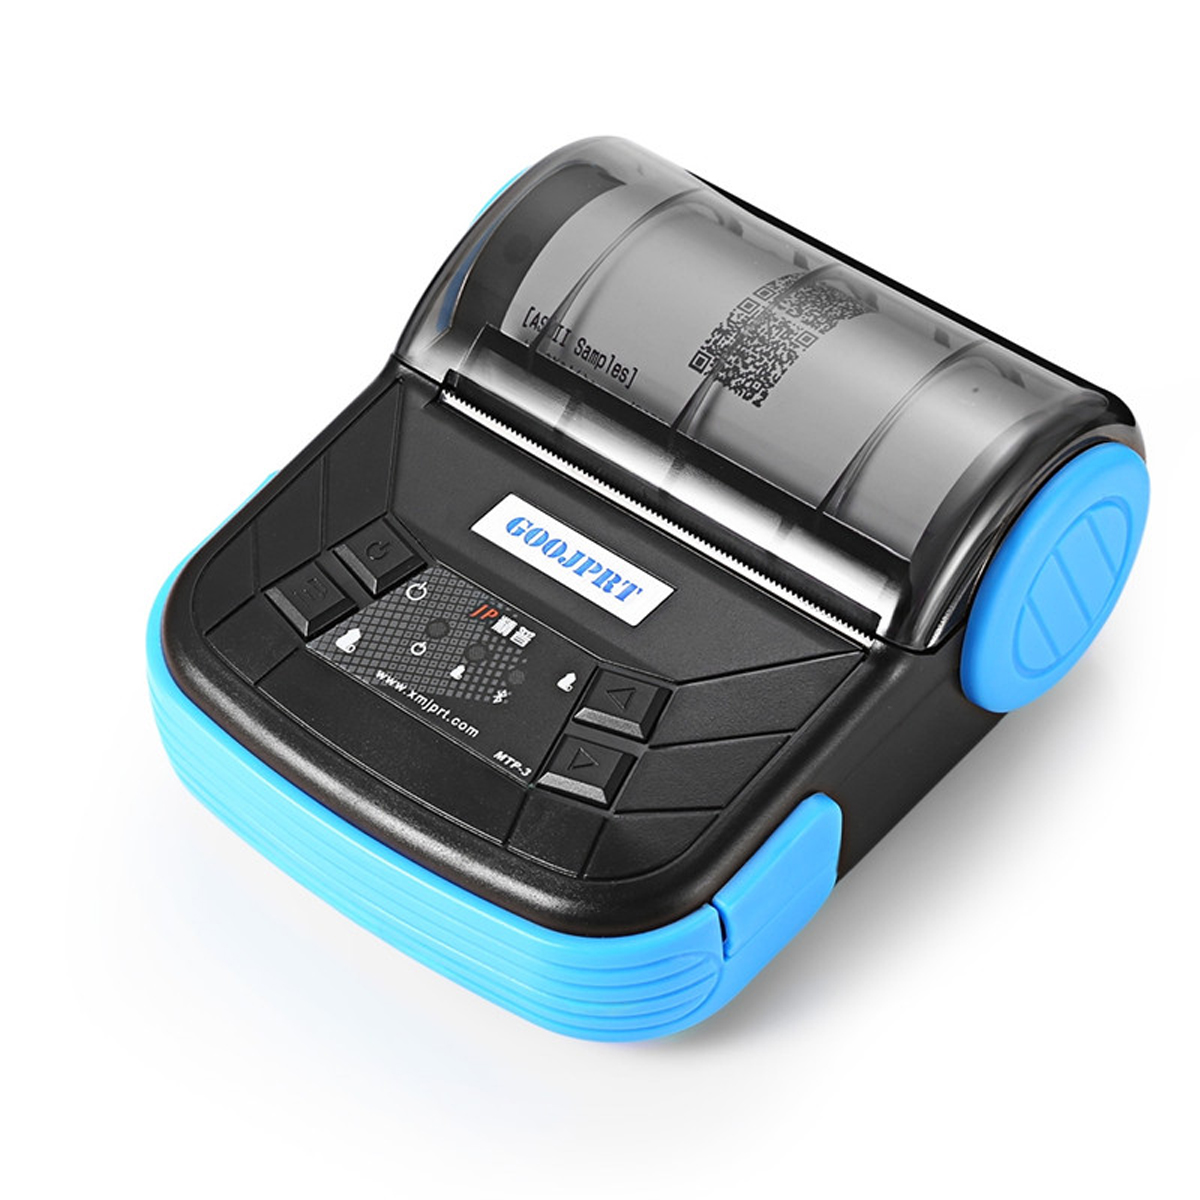 Pc Portable Cdiscount Nouveau Avanc 80mm Bluetooth Imprimante thermique Prise Eu Pour android Pos